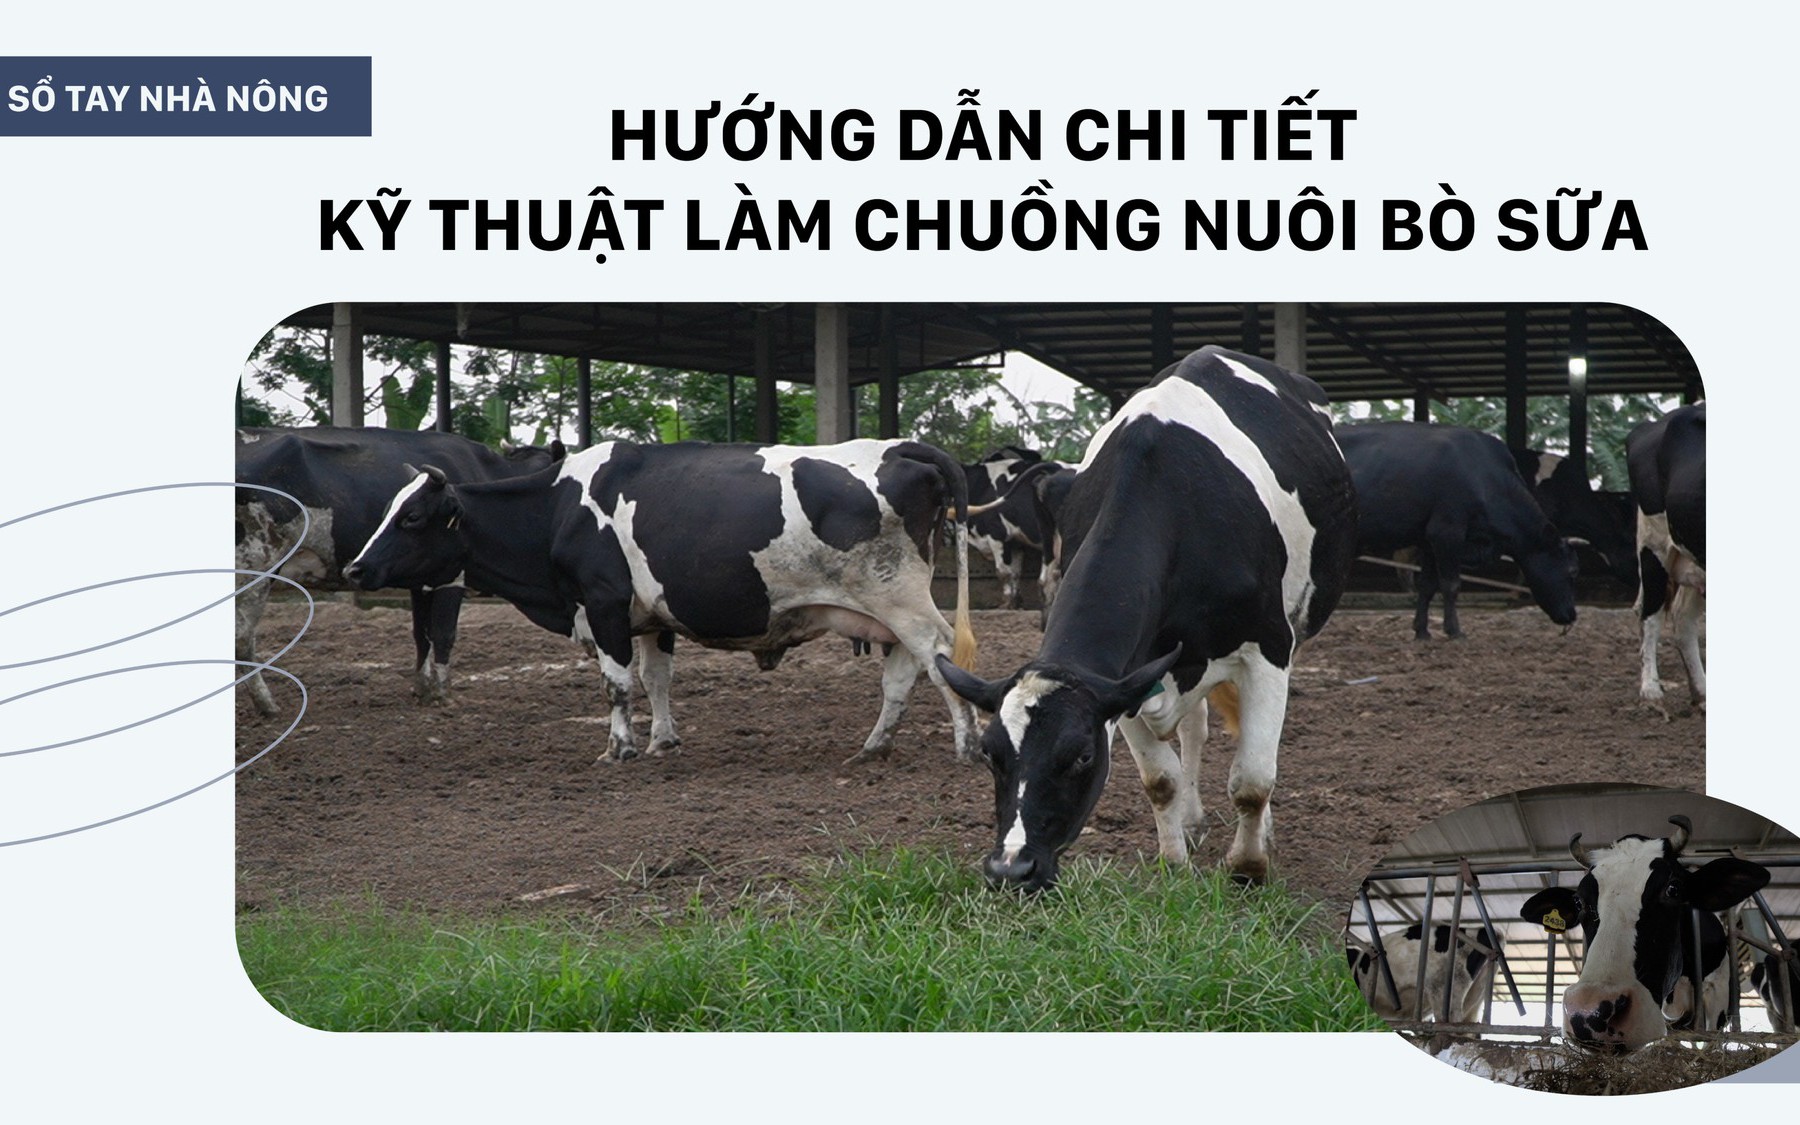 SỔ TAY NHÀ NÔNG: Hướng dẫn kỹ thuật làm chuồng nuôi bò sữa